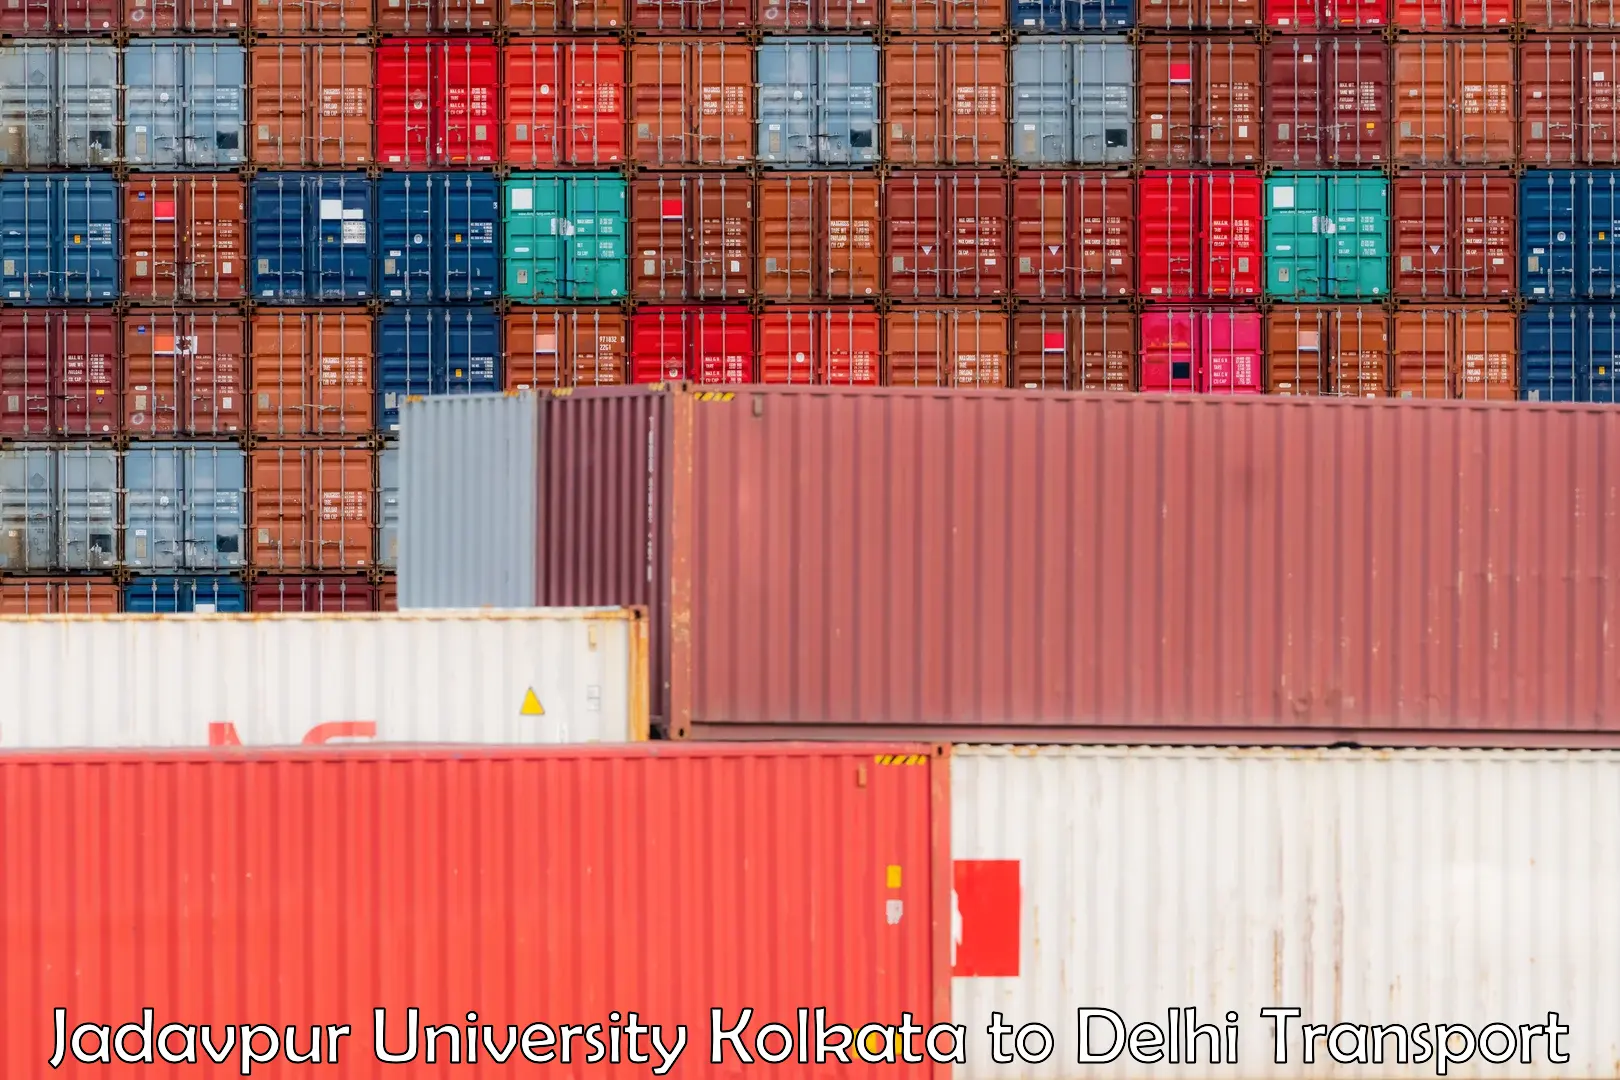 Shipping partner in Jadavpur University Kolkata to East Delhi